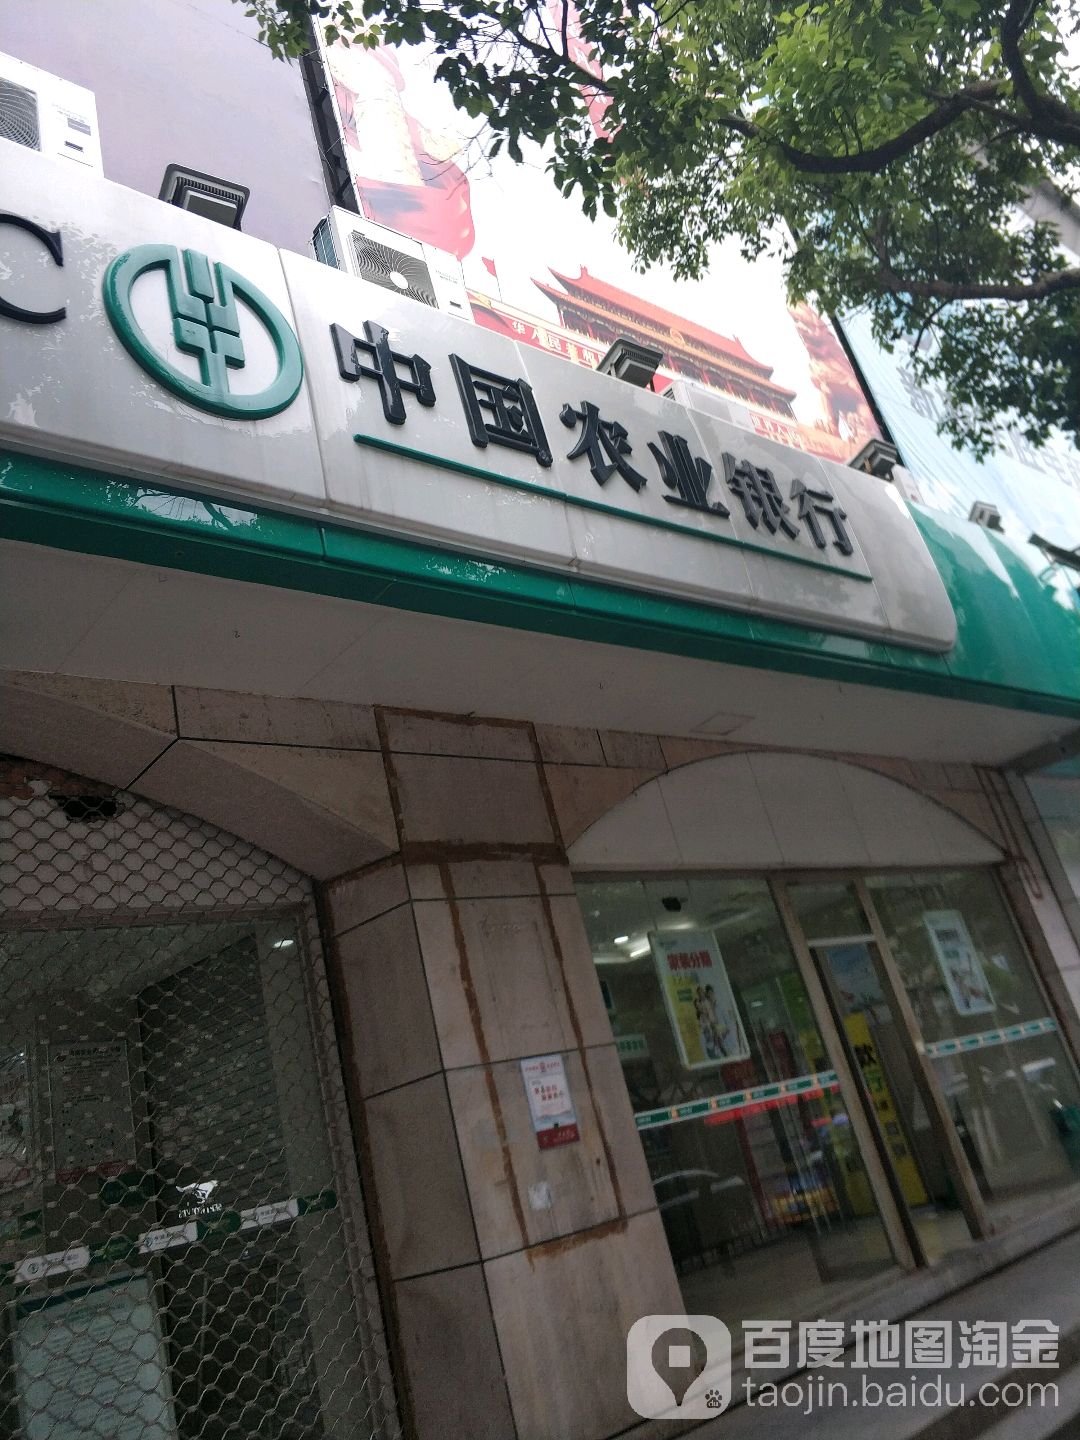 中國農業銀行(瑞安玉海支行)